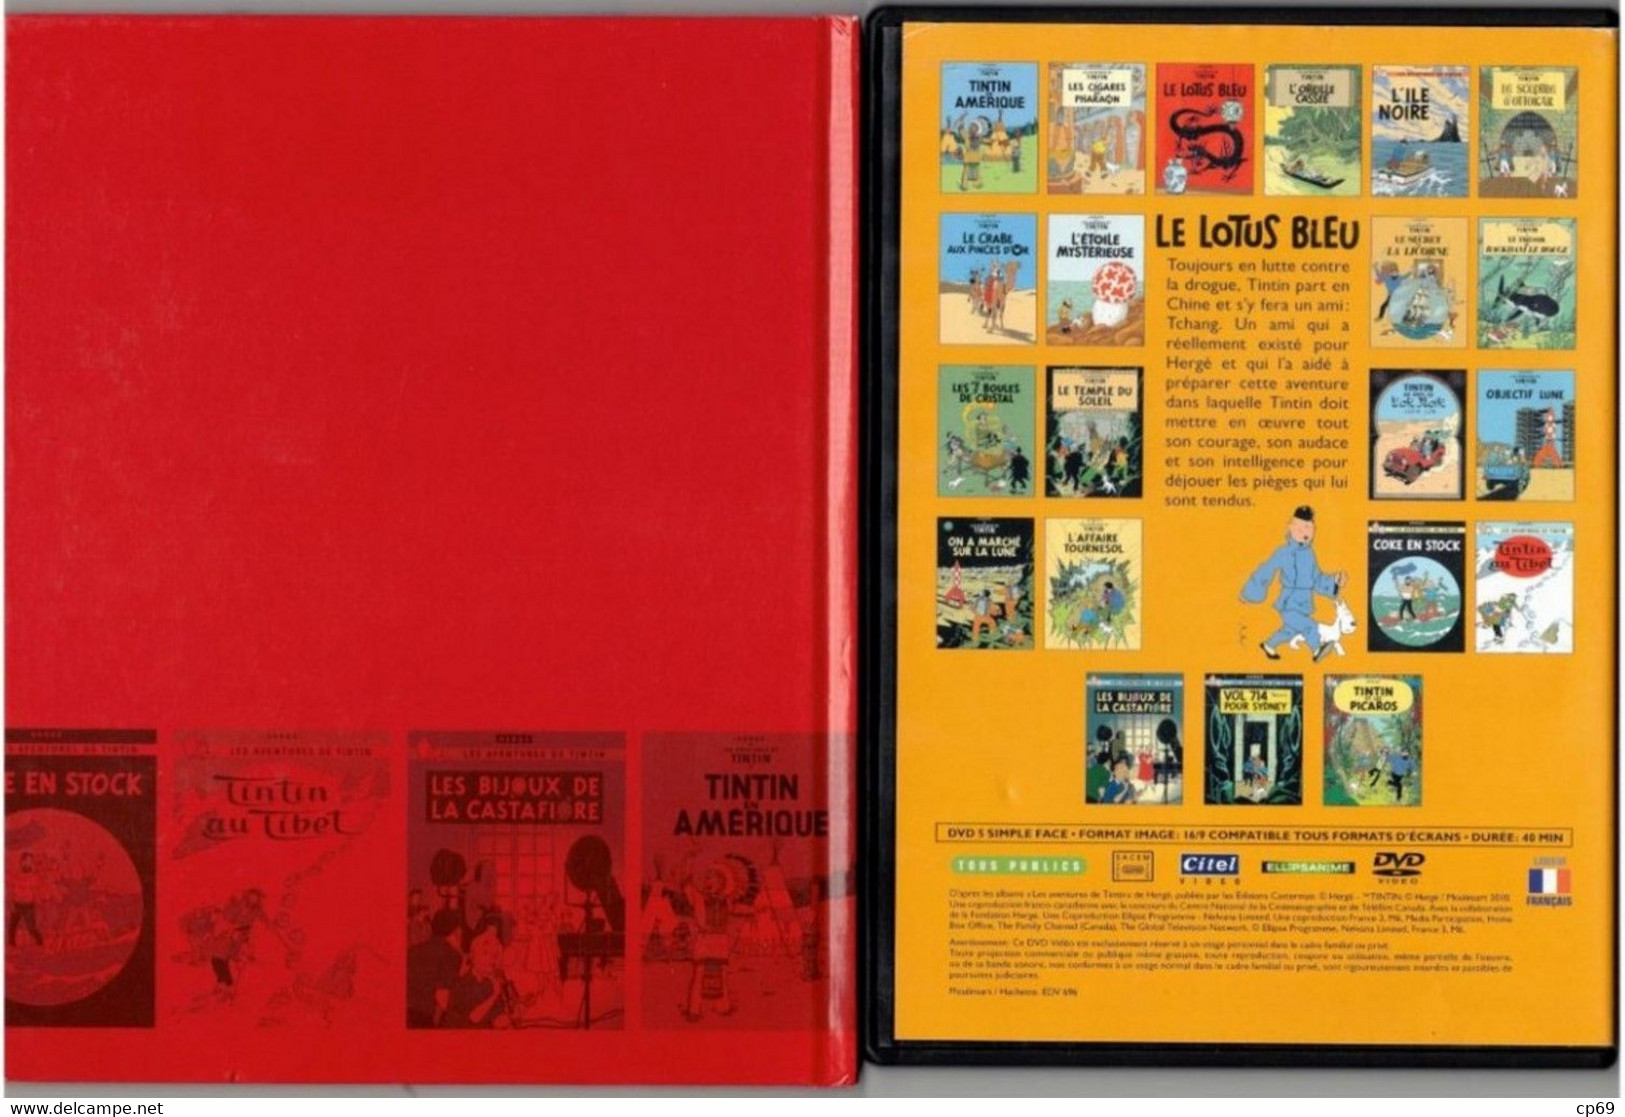 Tintin Hergé / Moulinsart 2010 Milou Chien Dog Cane Le Lotus Bleu N°1 DVD + Livret Explicatif En B.Etat - Cartoni Animati